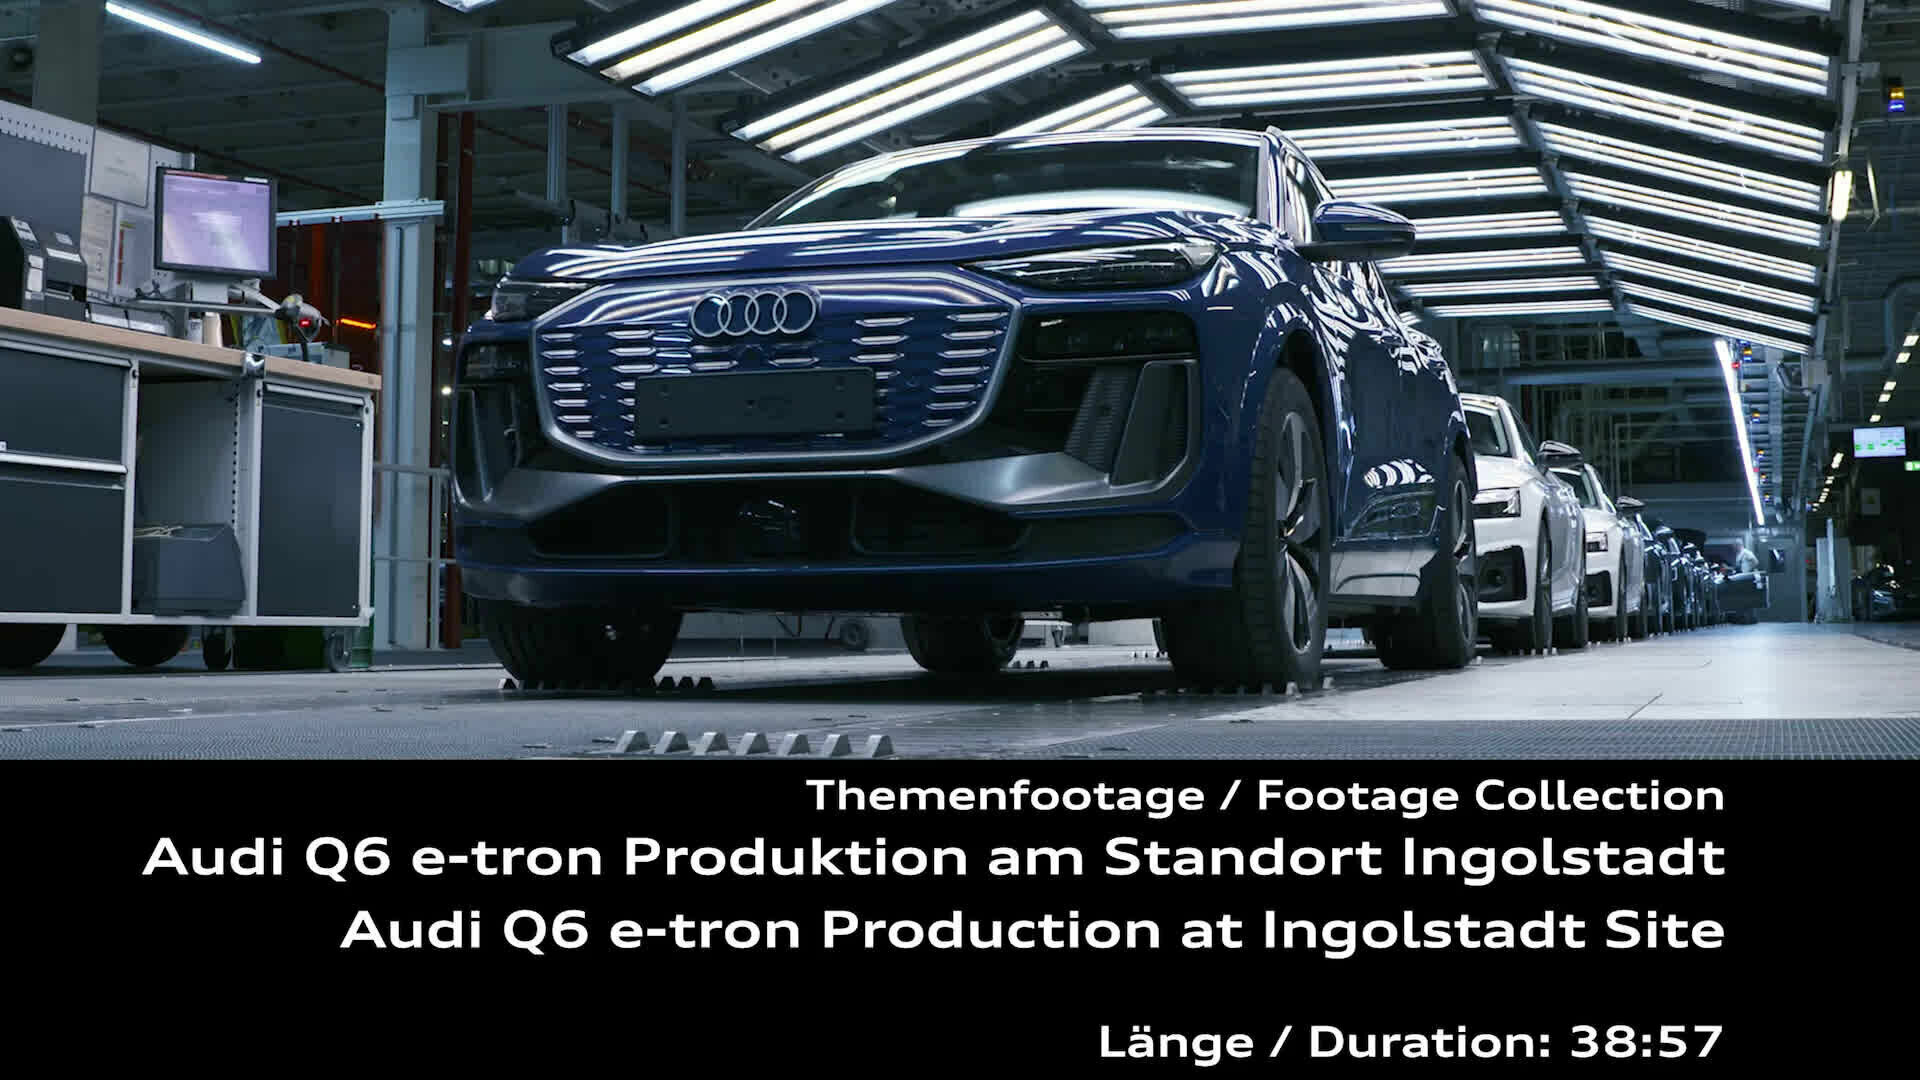 Audi Q6 e-tron Production at Ingolstadt Site - Footage